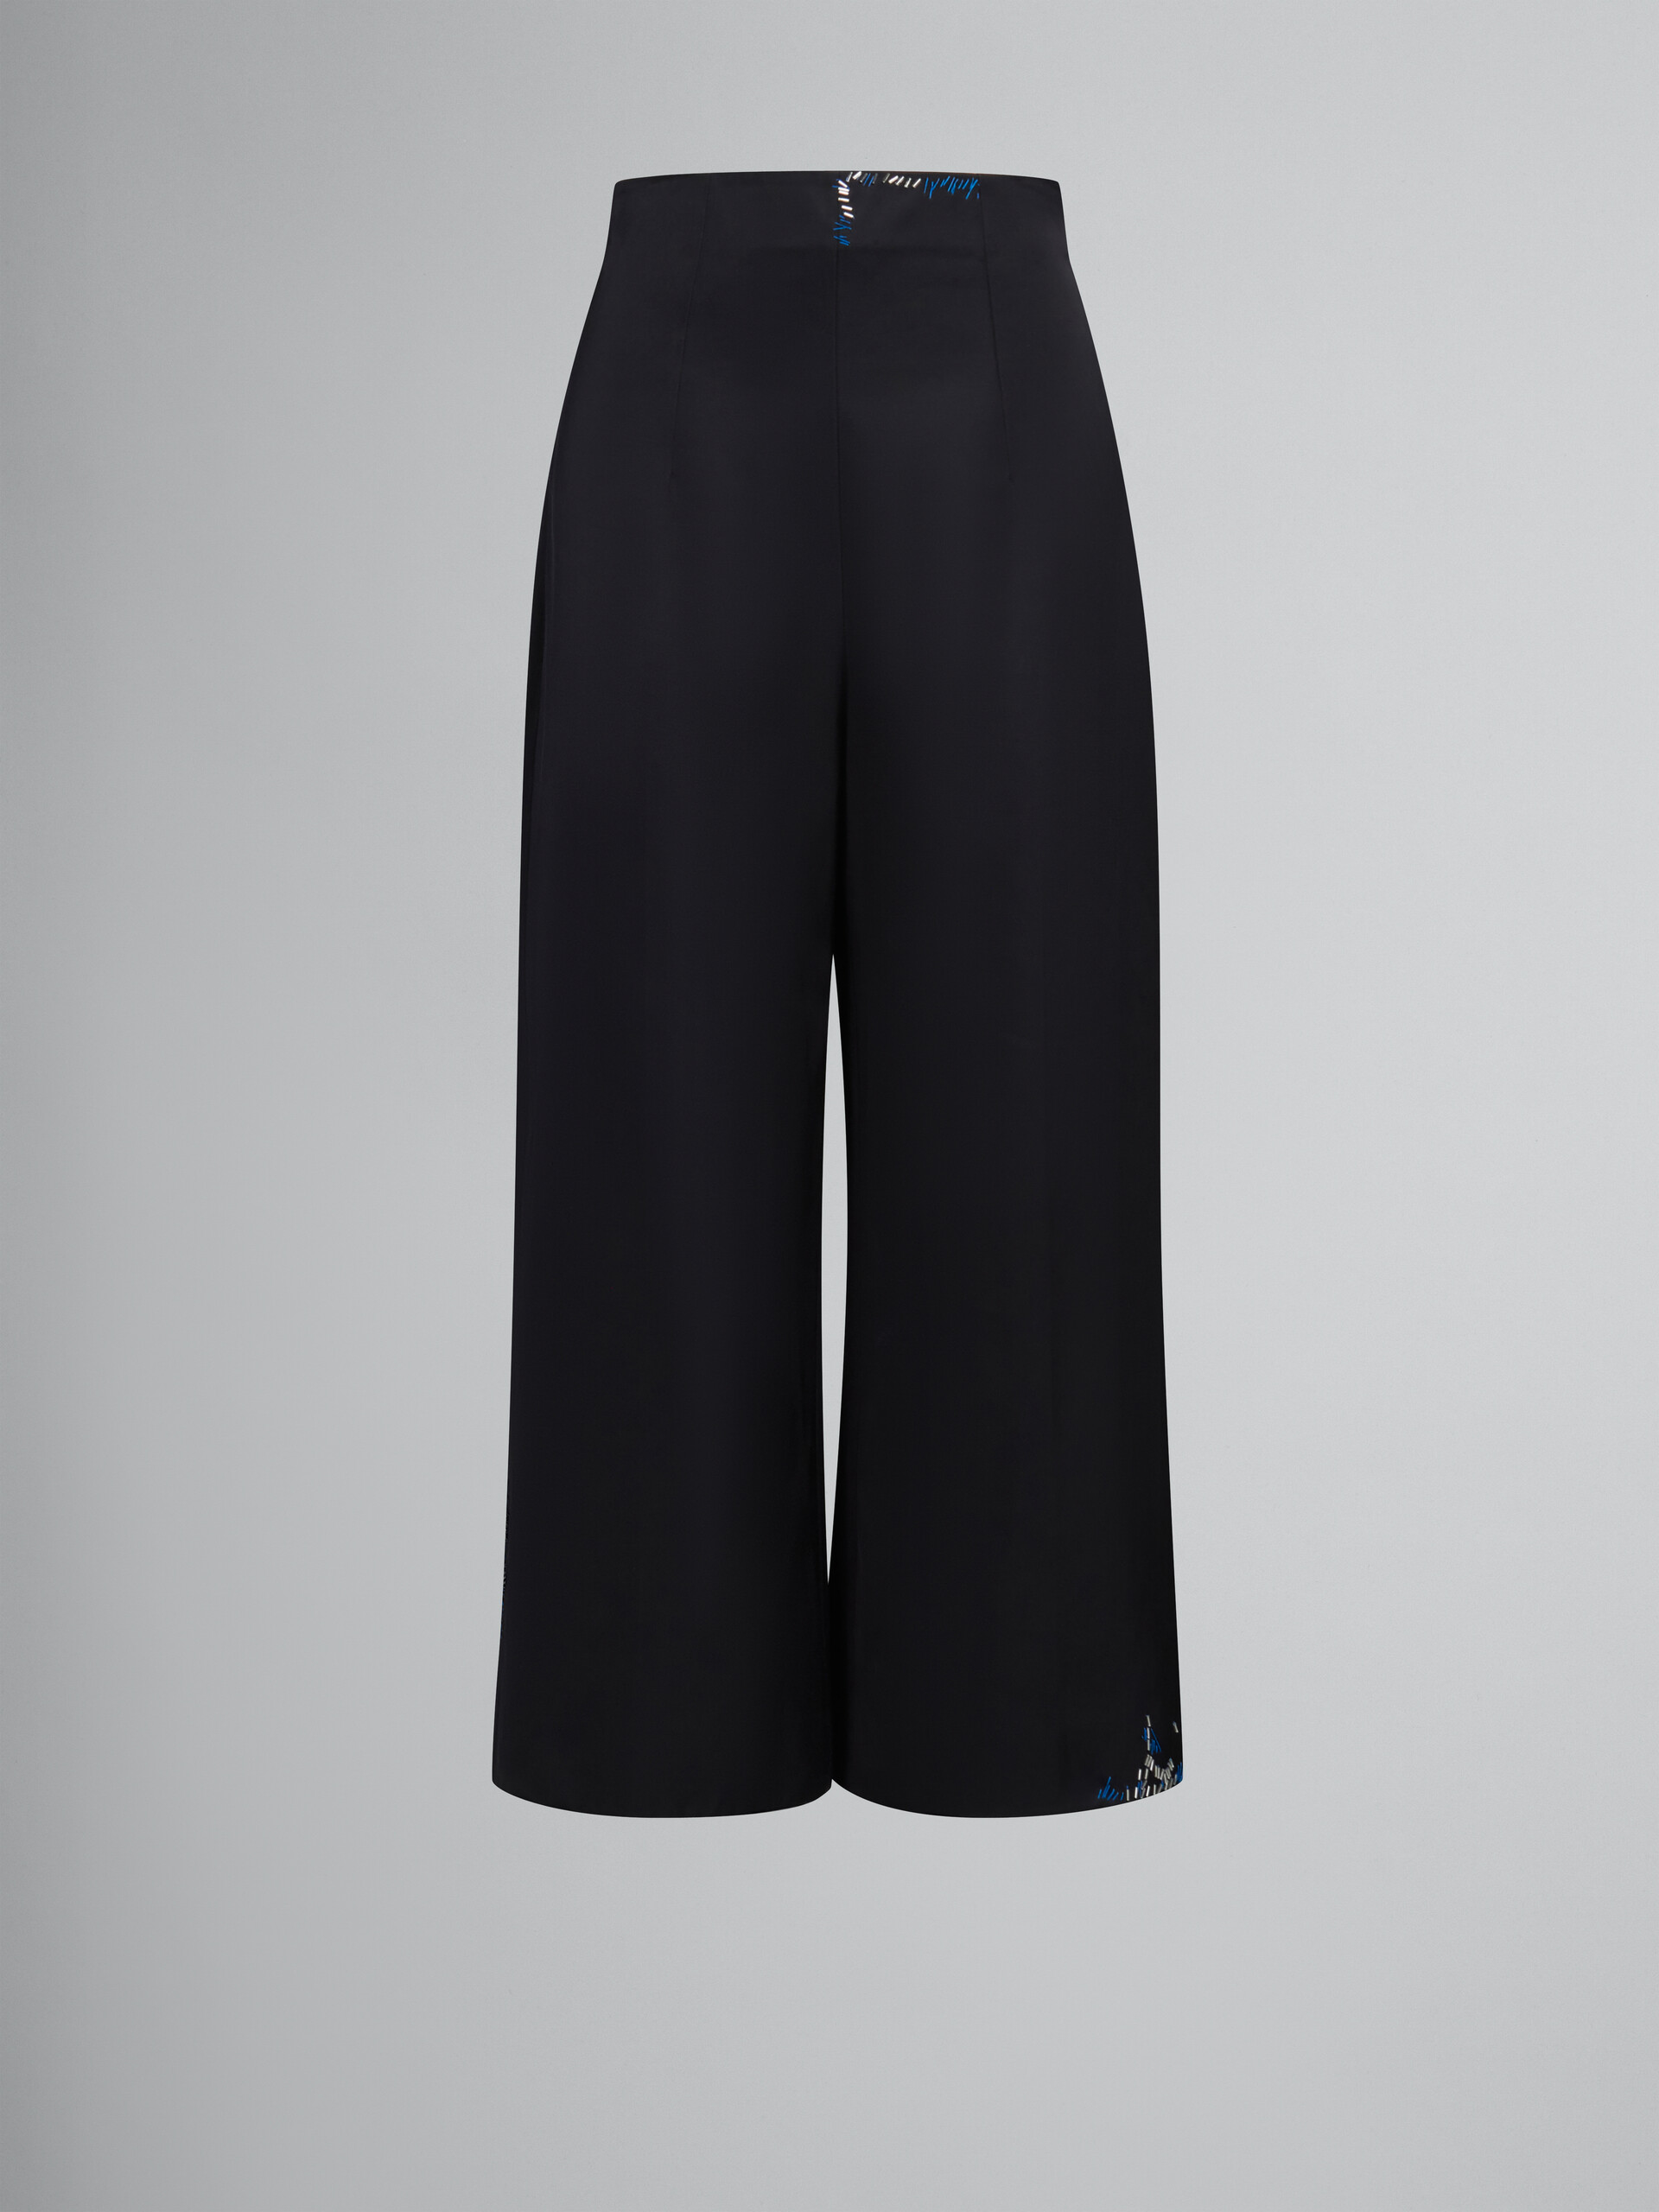 Pantalones negros de satén duquesa con cuentas efecto remiendo - Pantalones - Image 1